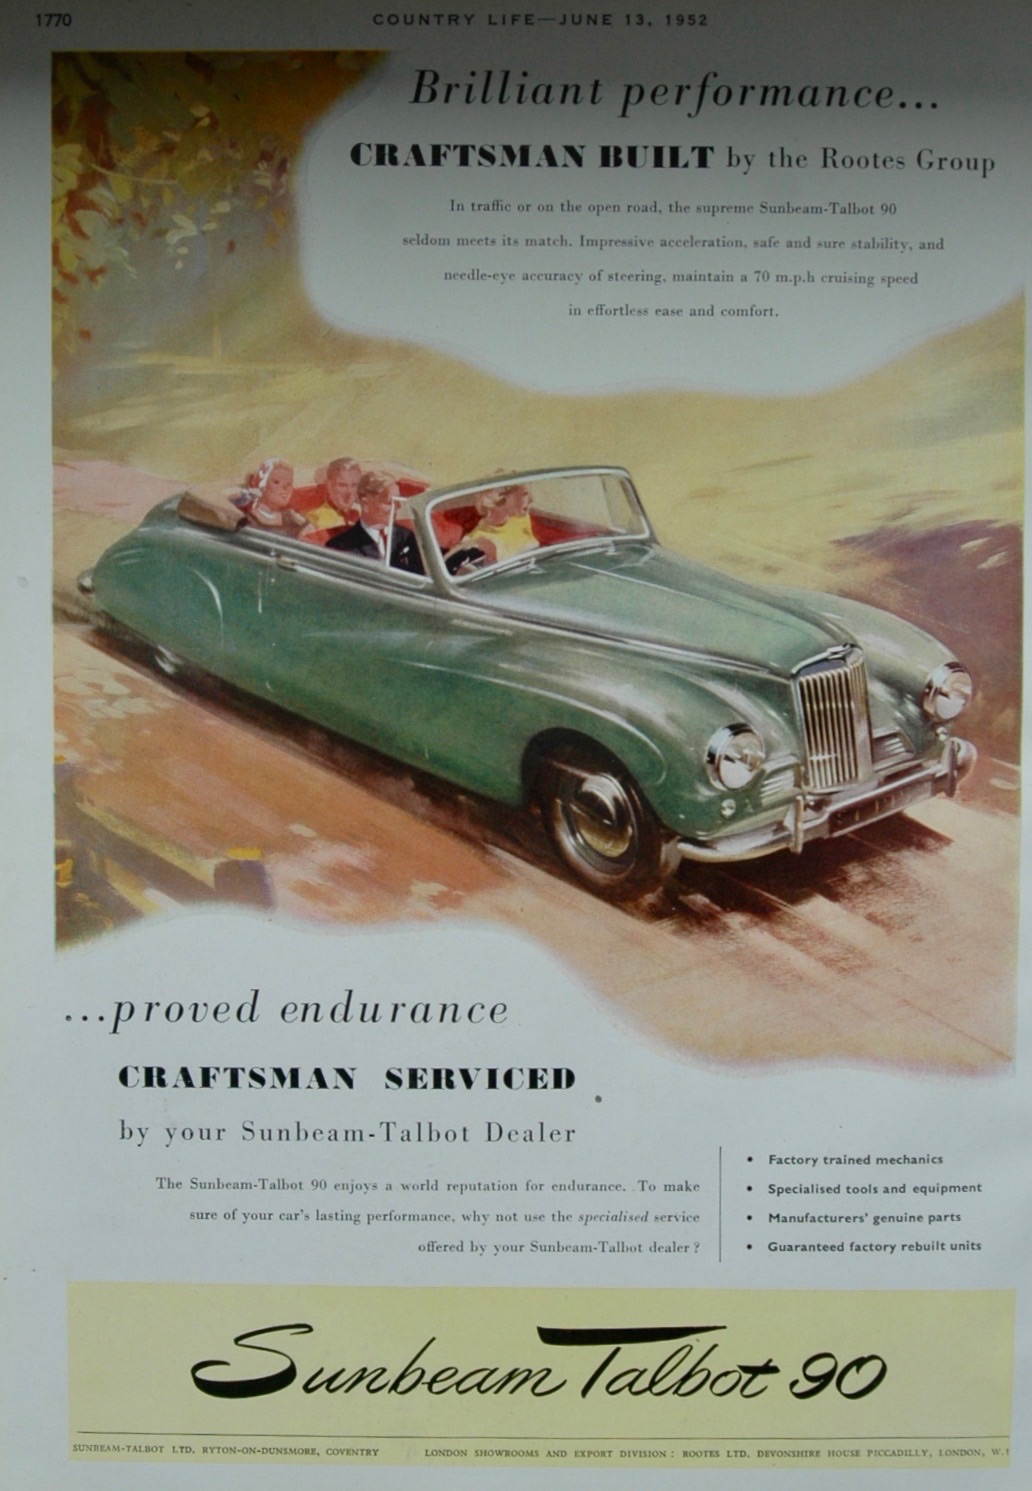 Advert for Sunbeam Talbot 90